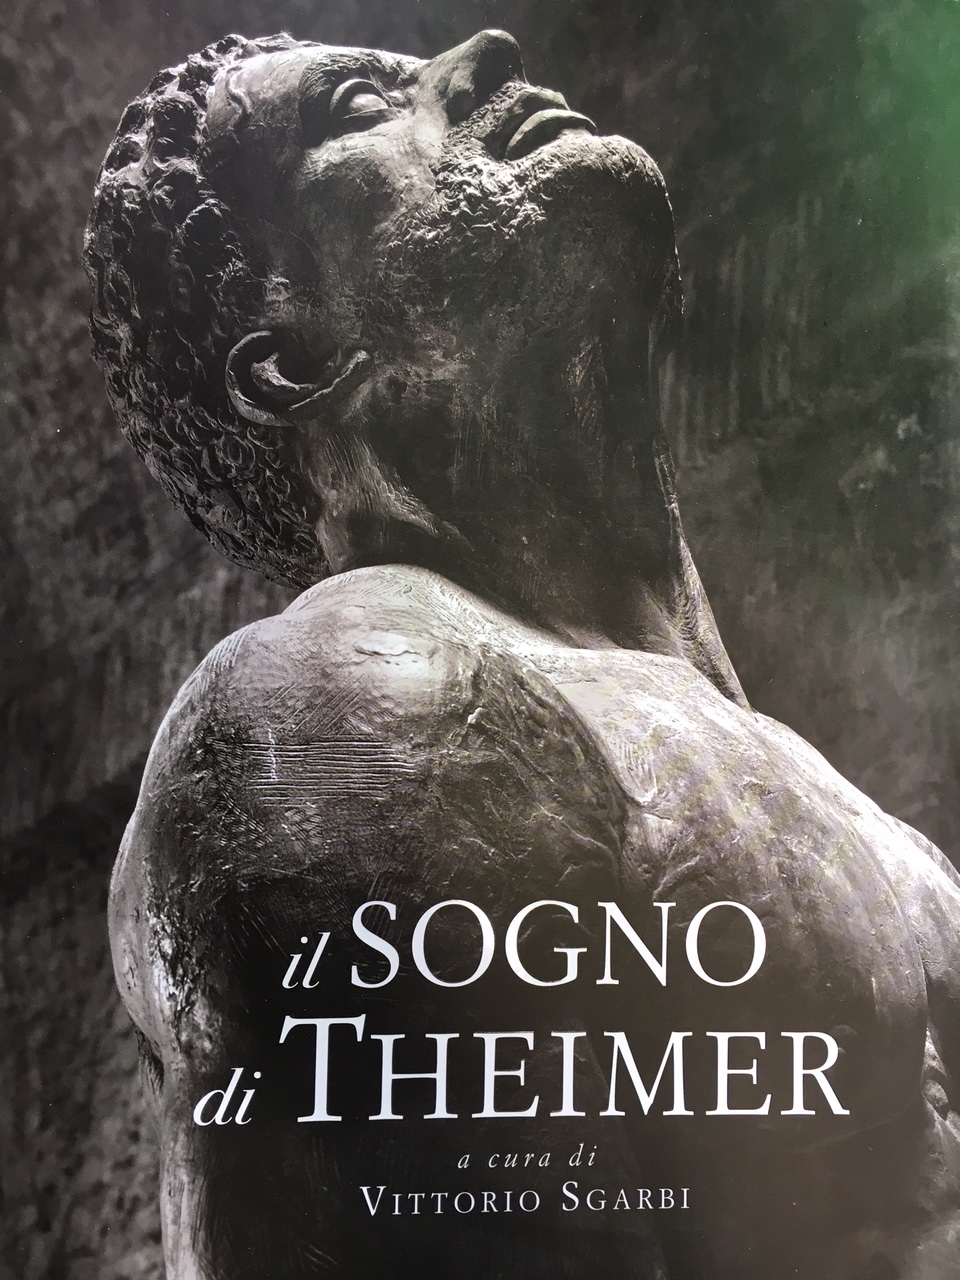 Il libro d’arte sulla mostra “Il sogno di Theimer”: dove acquistarlo